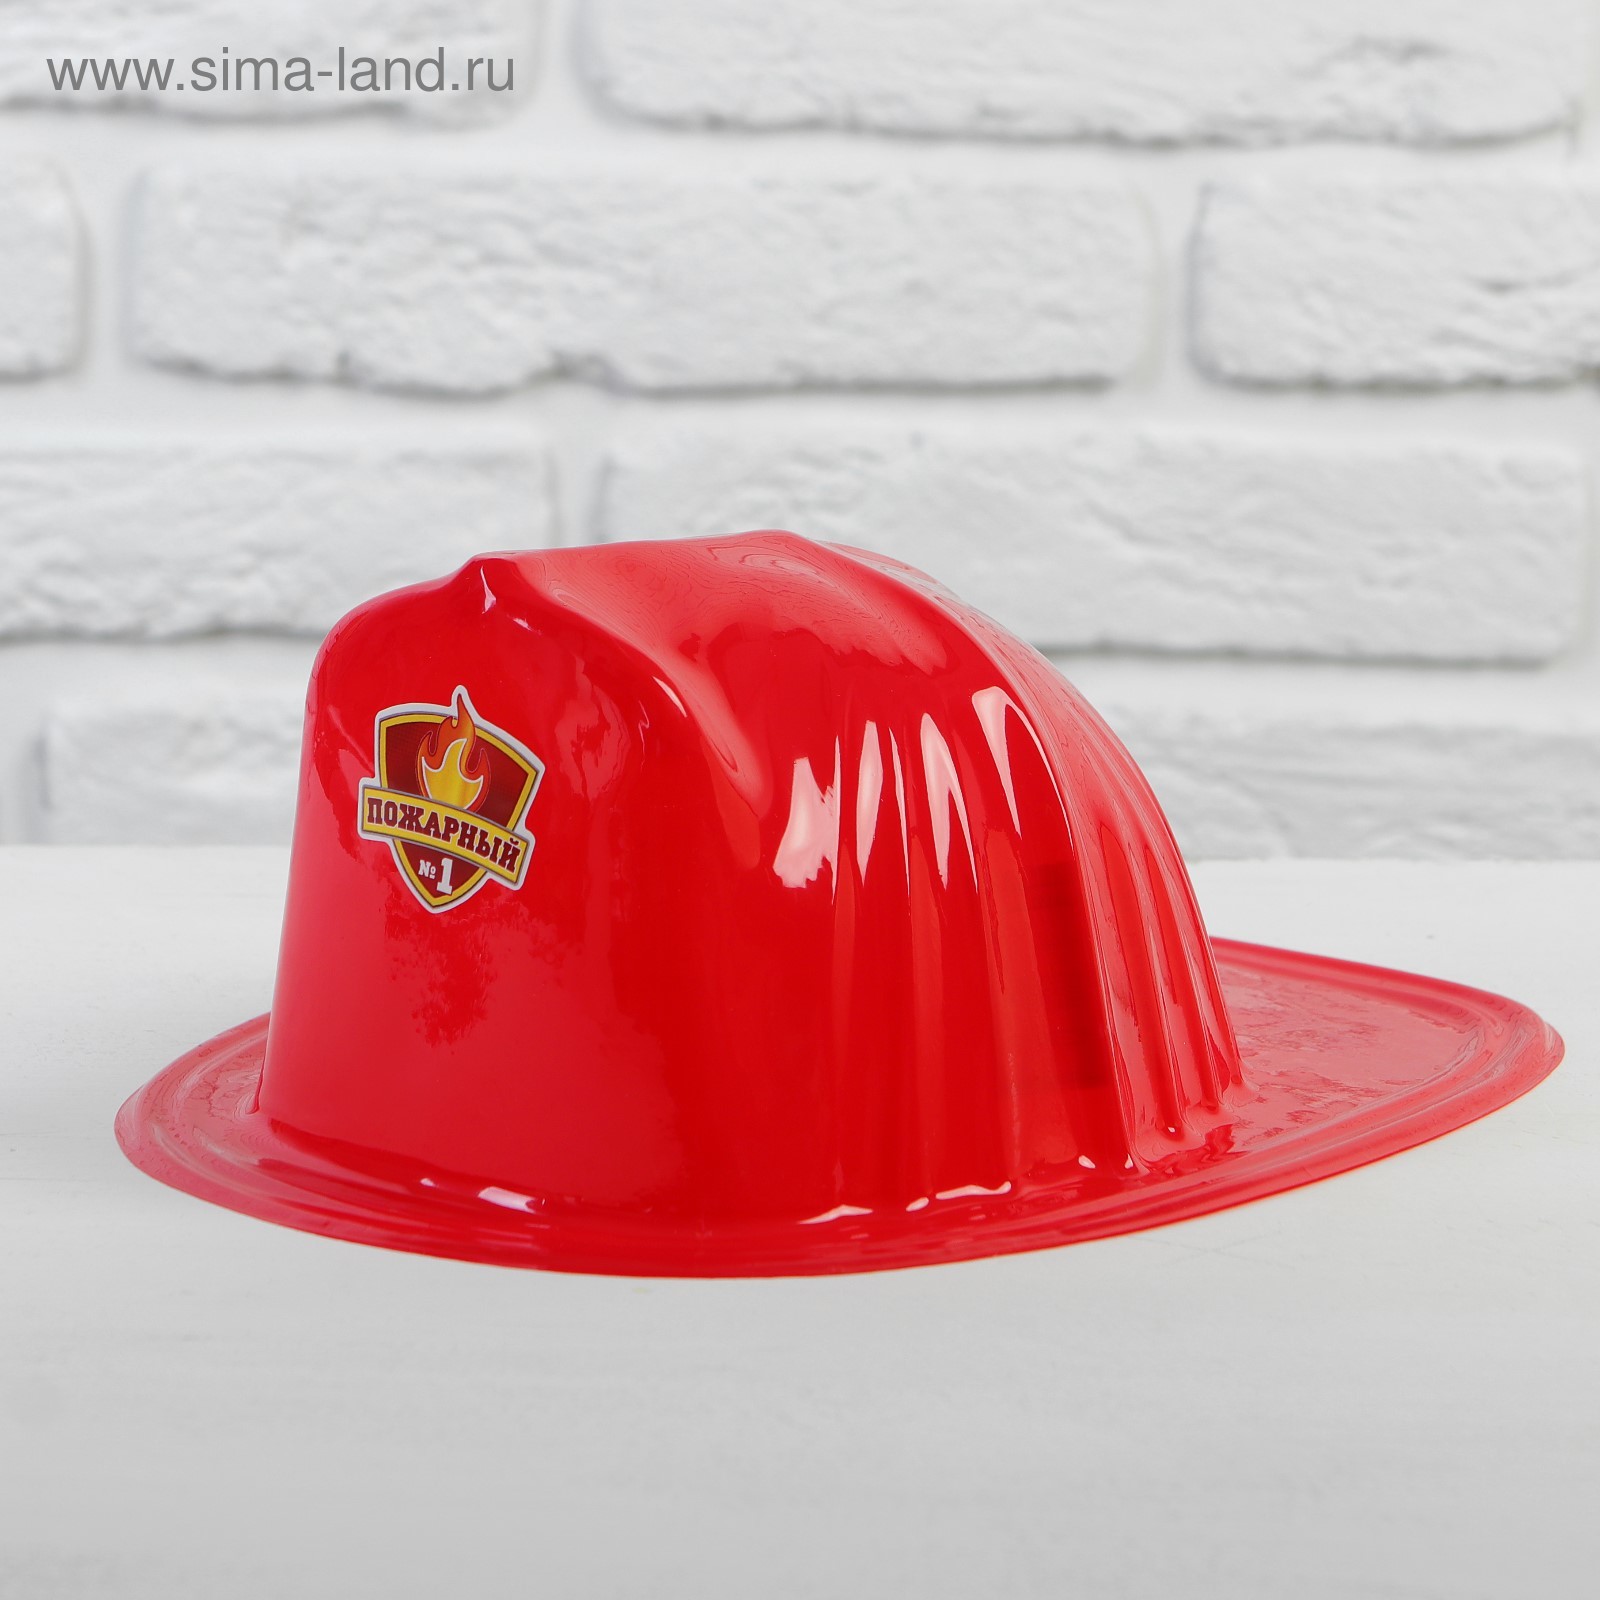 Каска шлем пожарника пожарная